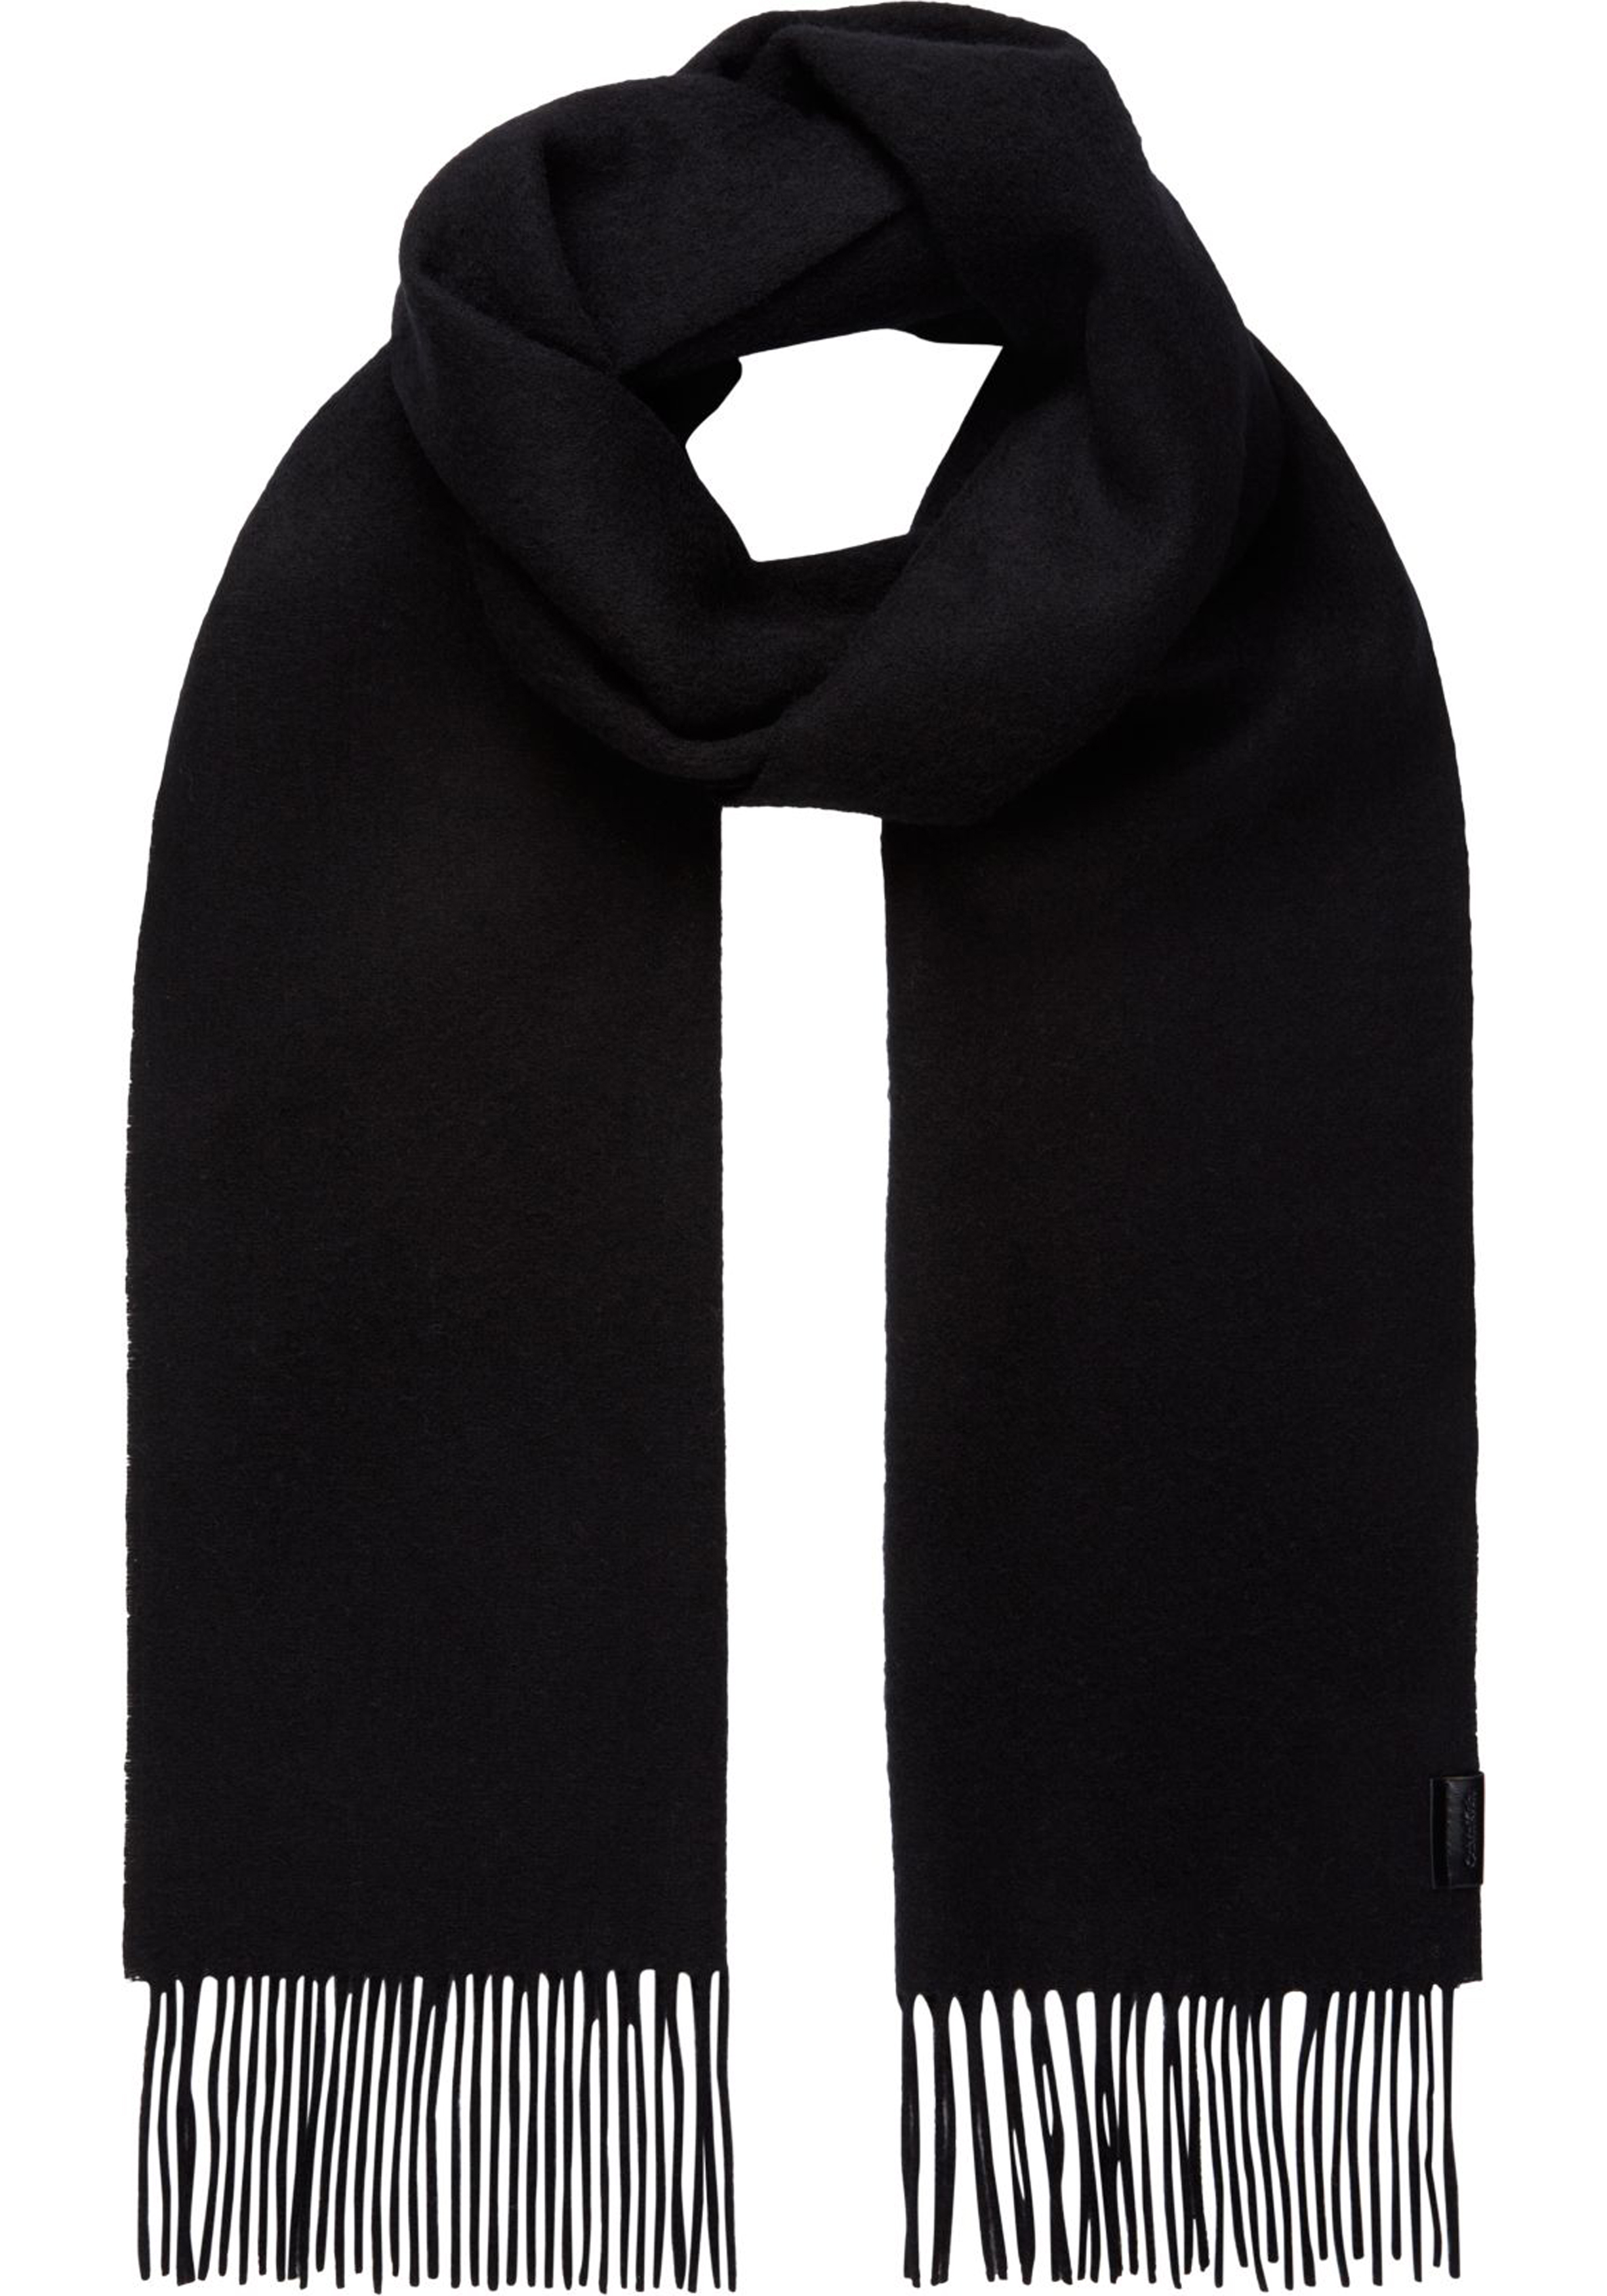 Koopje deelnemer Maak het zwaar Calvin Klein sjaal, classic wool woven scarf, zwart - Zomer SALE tot 50%  korting